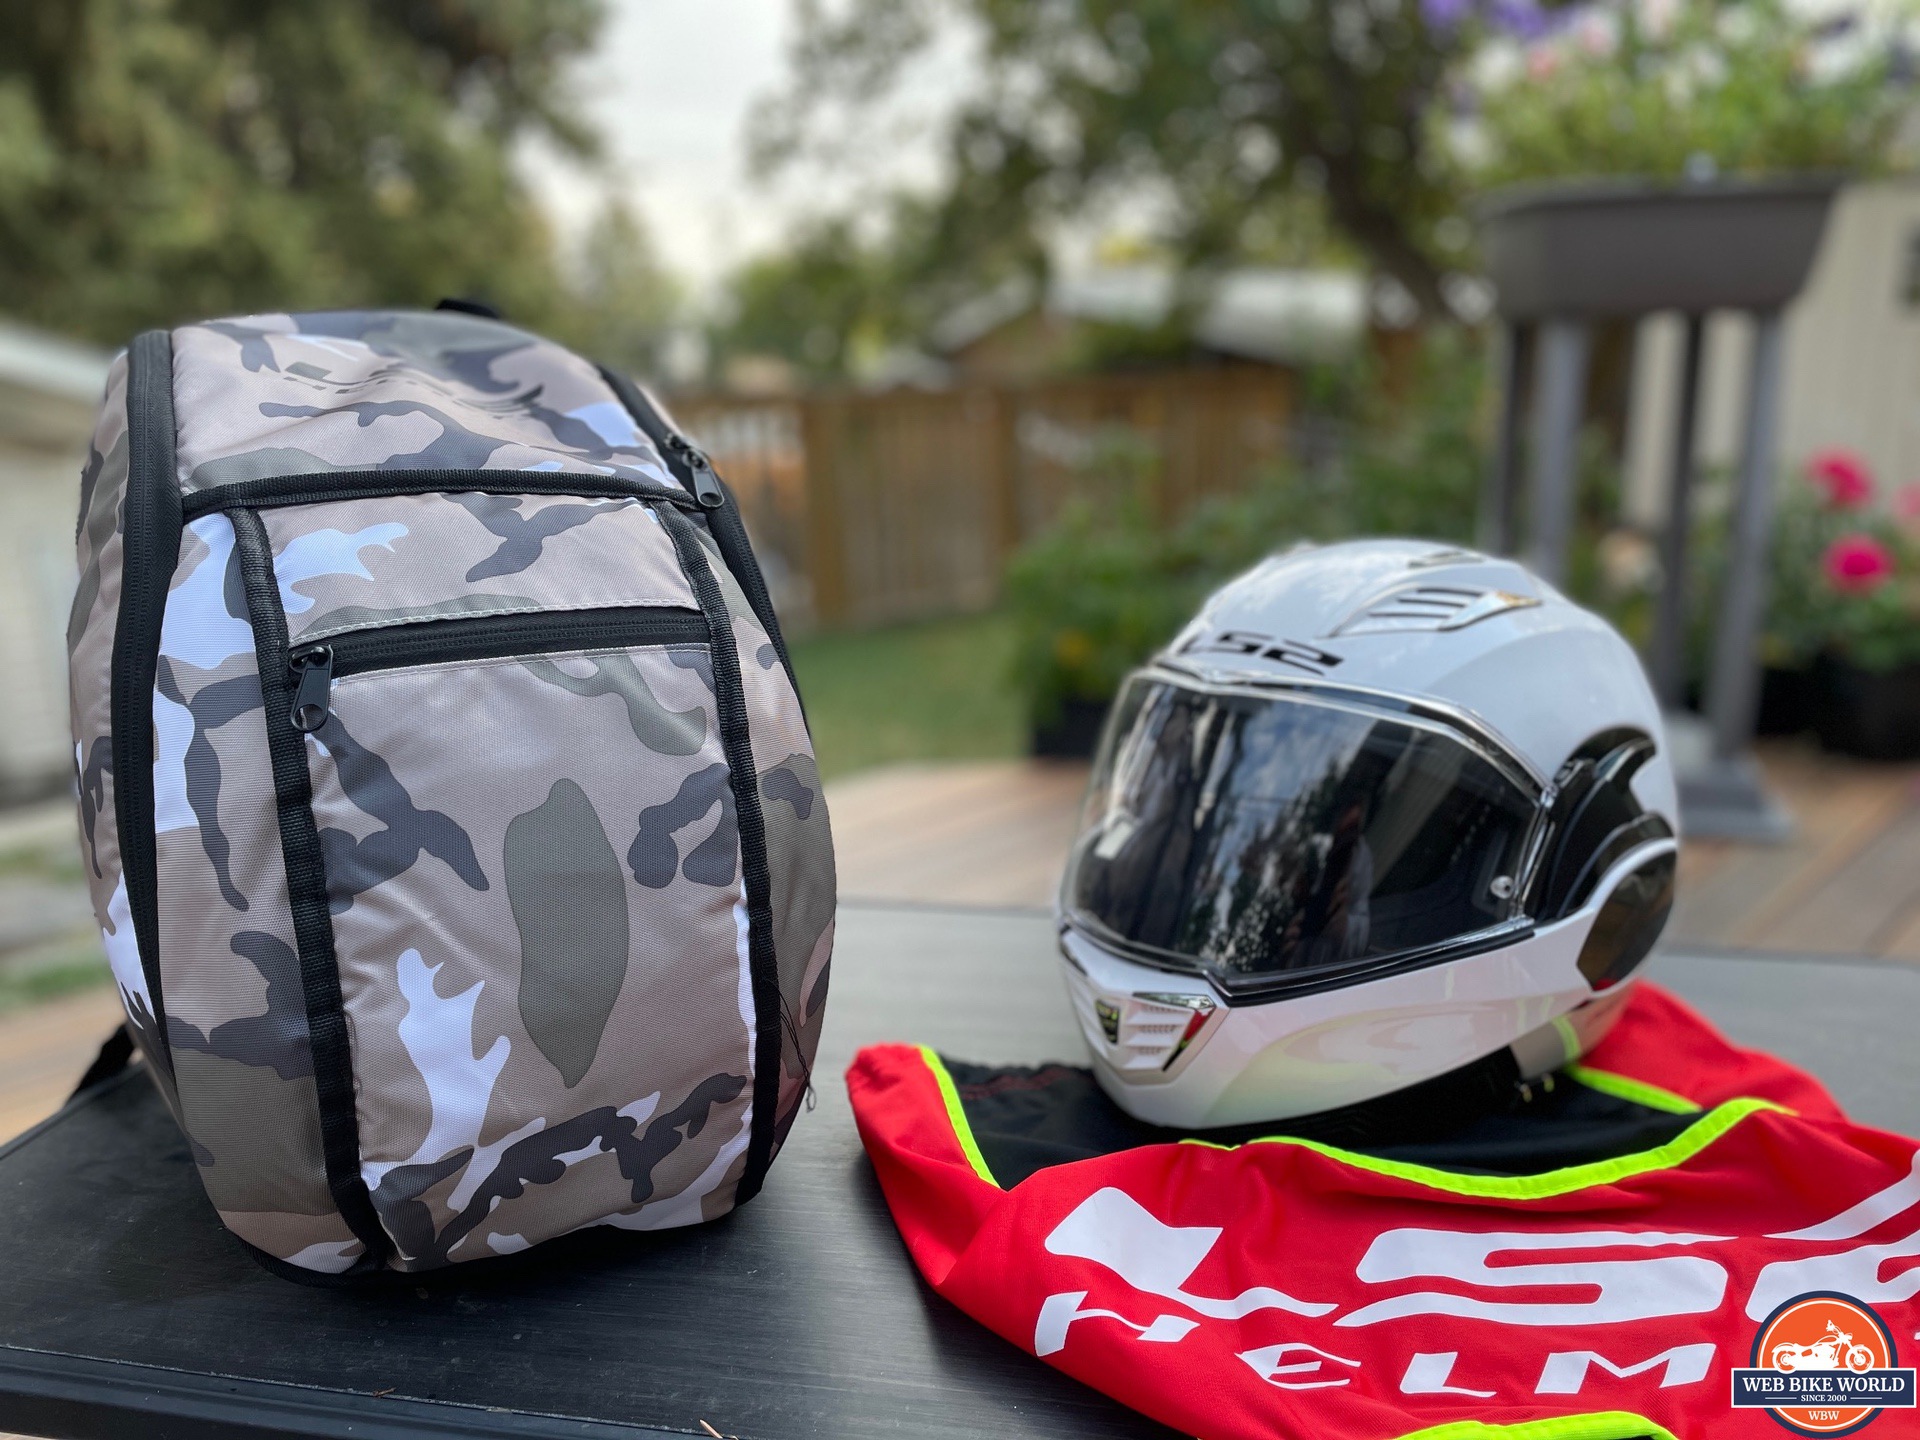 LS2 Valiant II modular helmet next to backpack